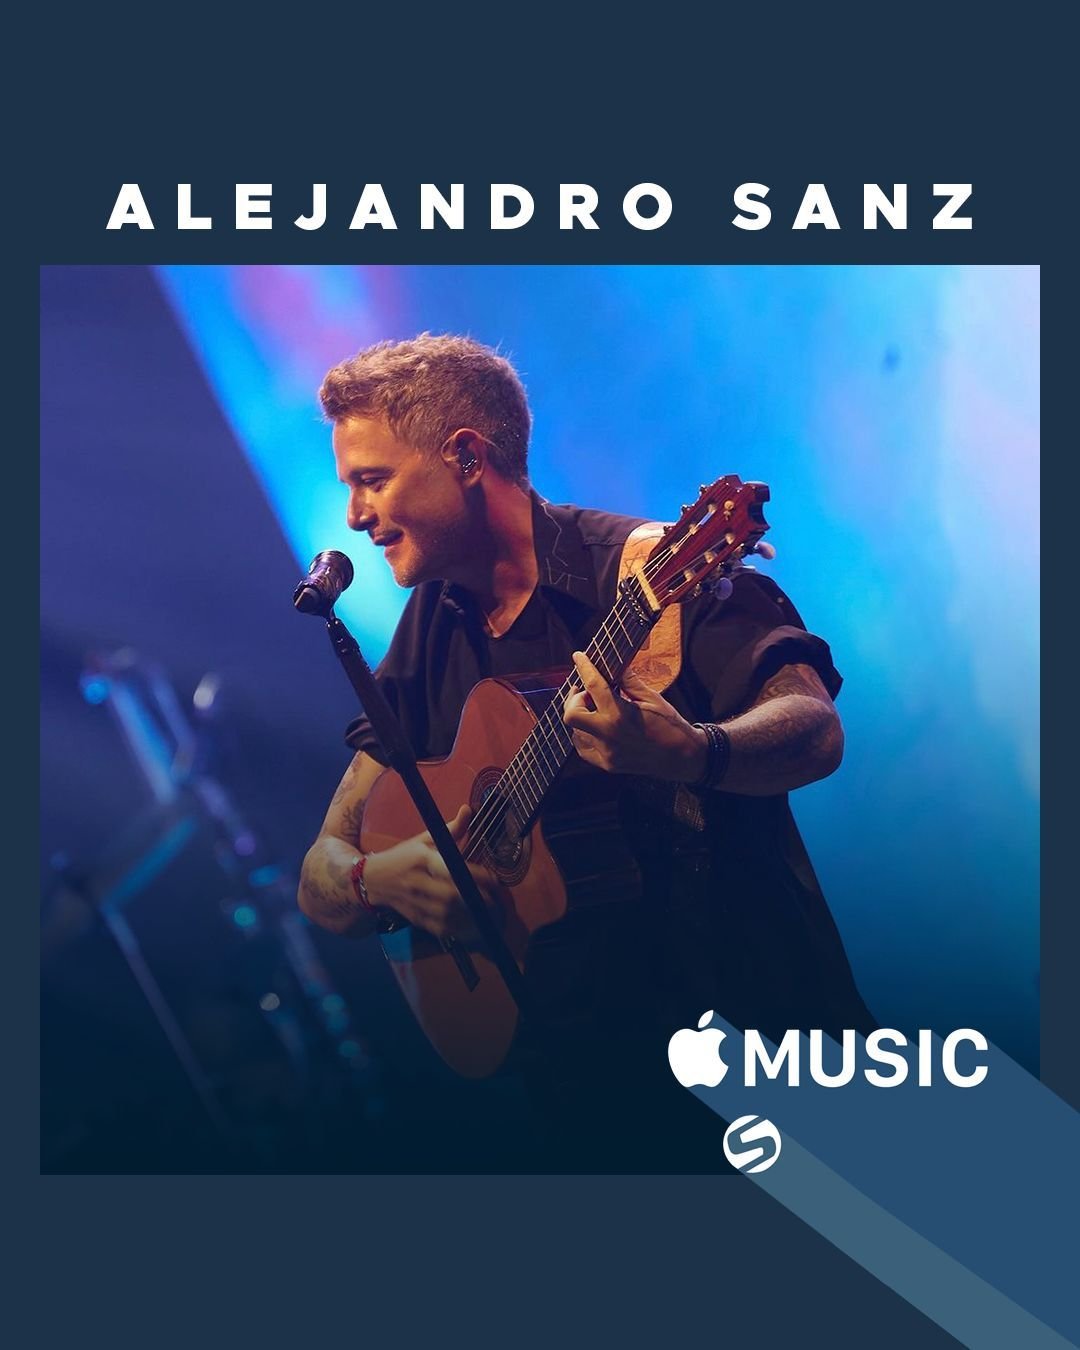 5 canciones de @alejandrosanz que no deben faltar en tu playlist de @applemusic